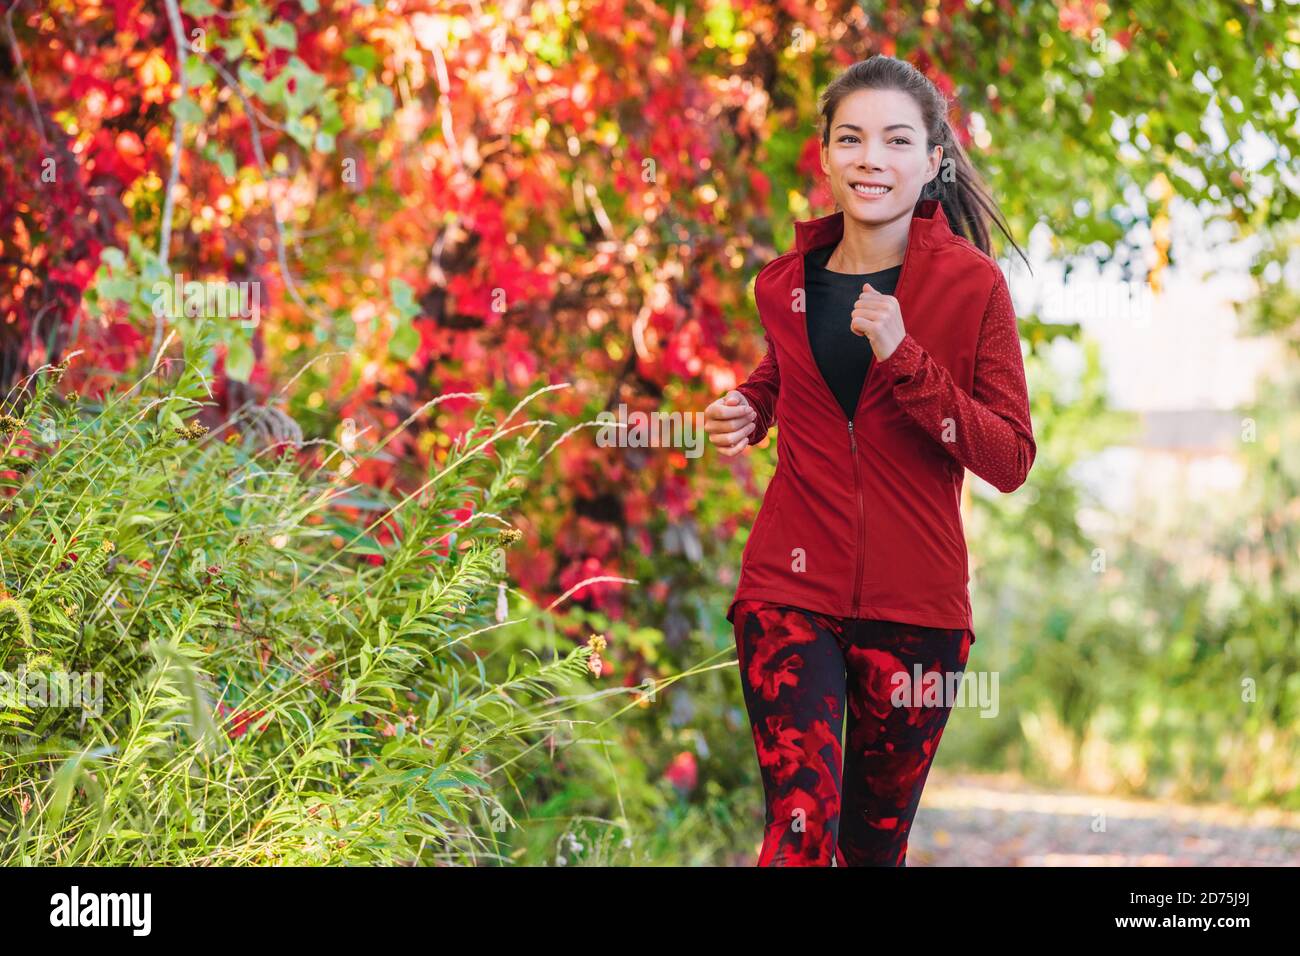 Gesunde aktive Lebensweise Laufen asiatische junge Frau Cardio-Training auf Stadtpark laufen Joggen im Freien im Herbst Blätter Stockfoto